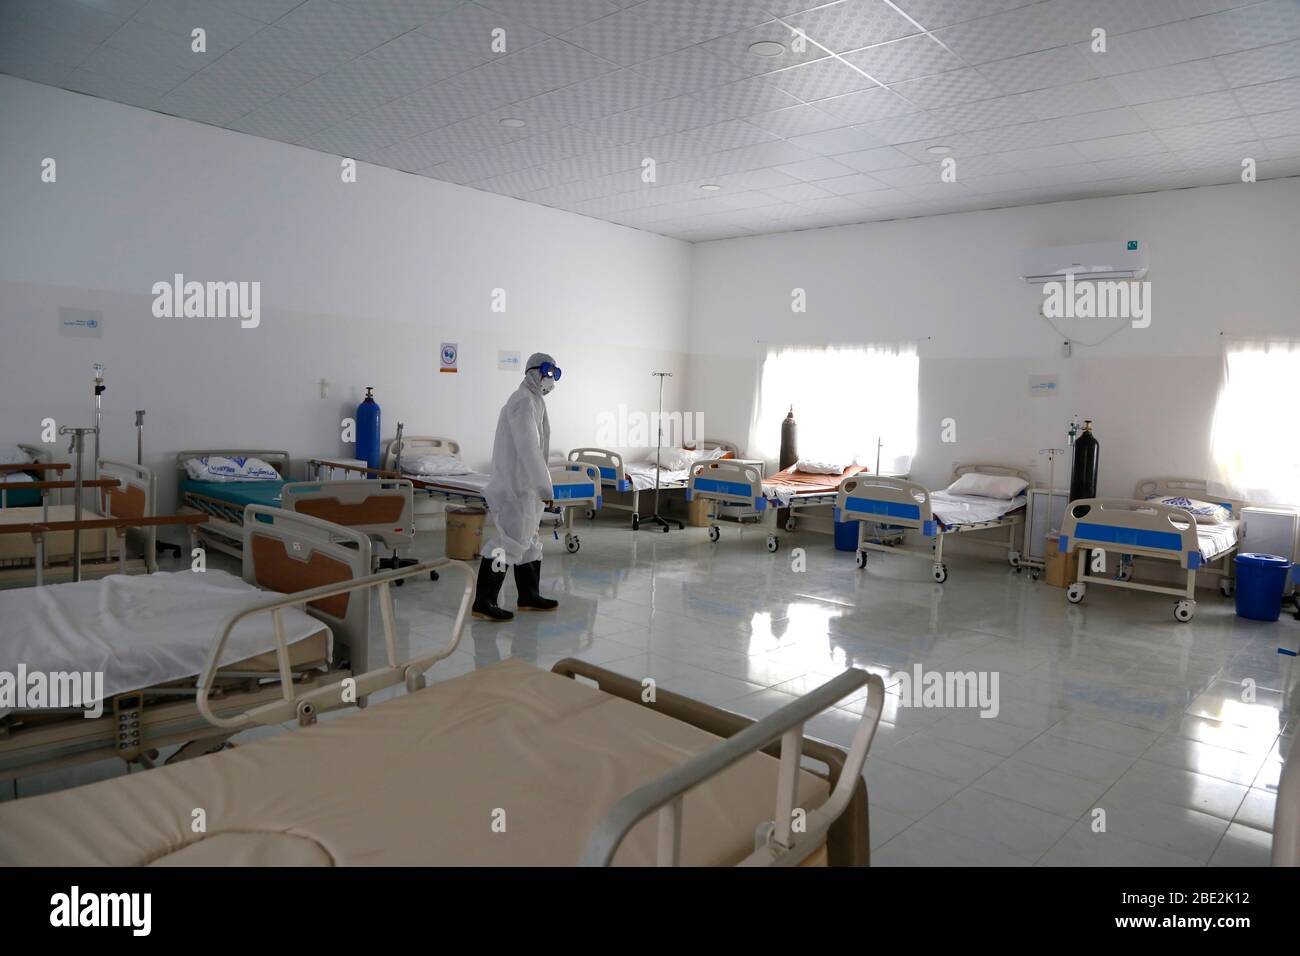 Sanna, Yemen. 11 de abril de 2020. Un trabajador sanitario inspecciona el equipo médico en un centro de cuarentena de un hospital de Sanaa, Yemen, 11 de abril de 2020. El gobierno yemení, respaldado por los sauditas, declaró el viernes el primer caso confirmado de COVID-19 en la provincia oriental de Hadramout. Crédito: Mohammed Mohammed/Xinhua/Alamy Live News Foto de stock